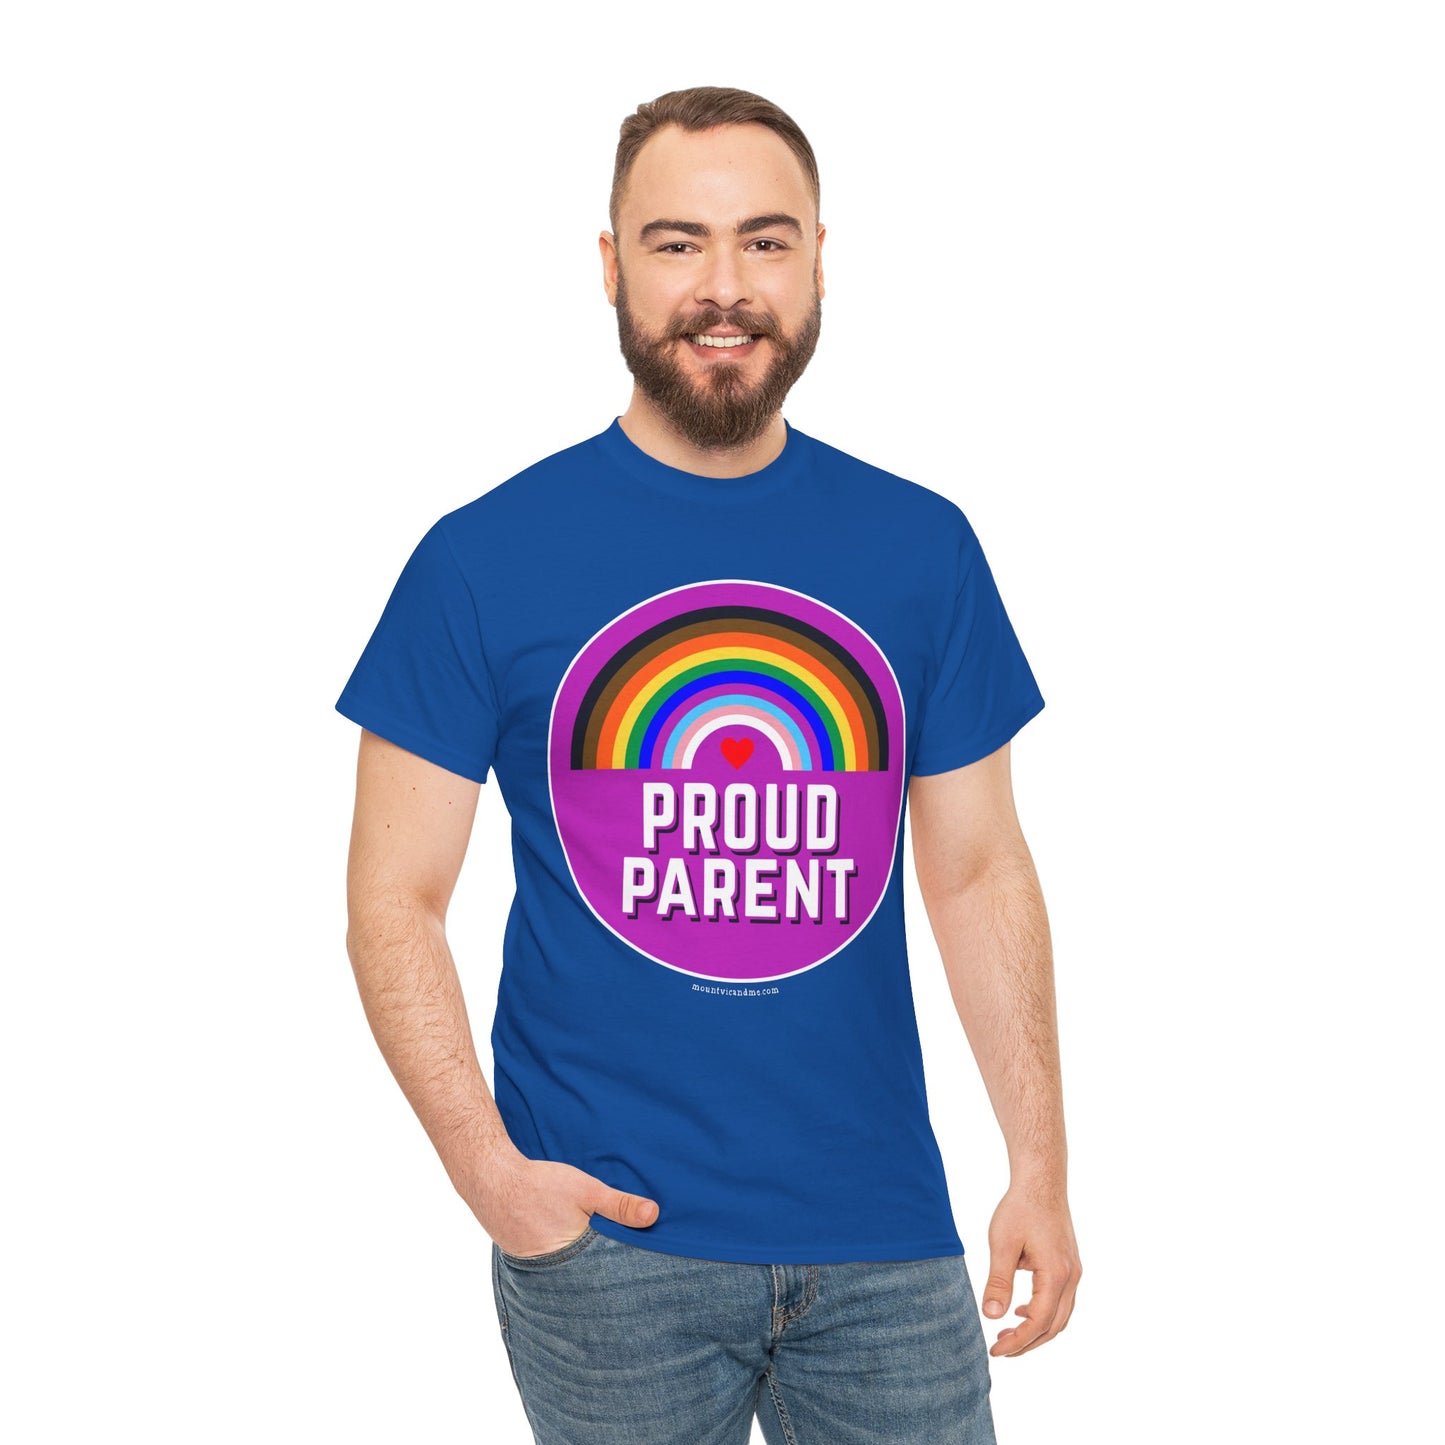 Proud Parent classic cotton t shirt